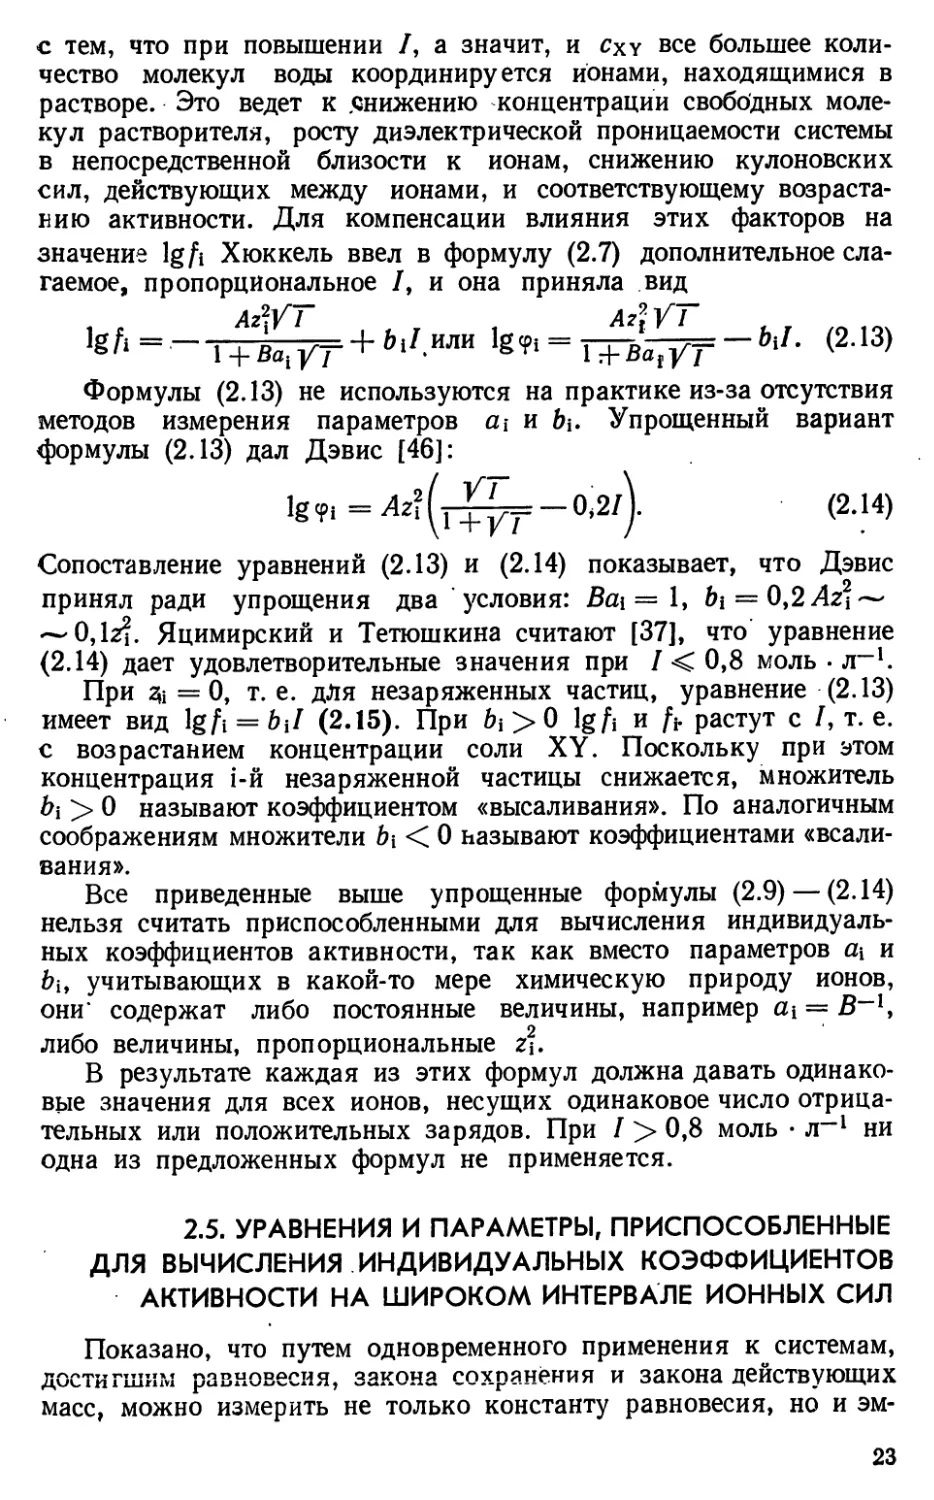 2.5. Уравнения и параметры, приспособленные для вычисления индивидуальных коэффициентов активности на широком интервале ионных сил